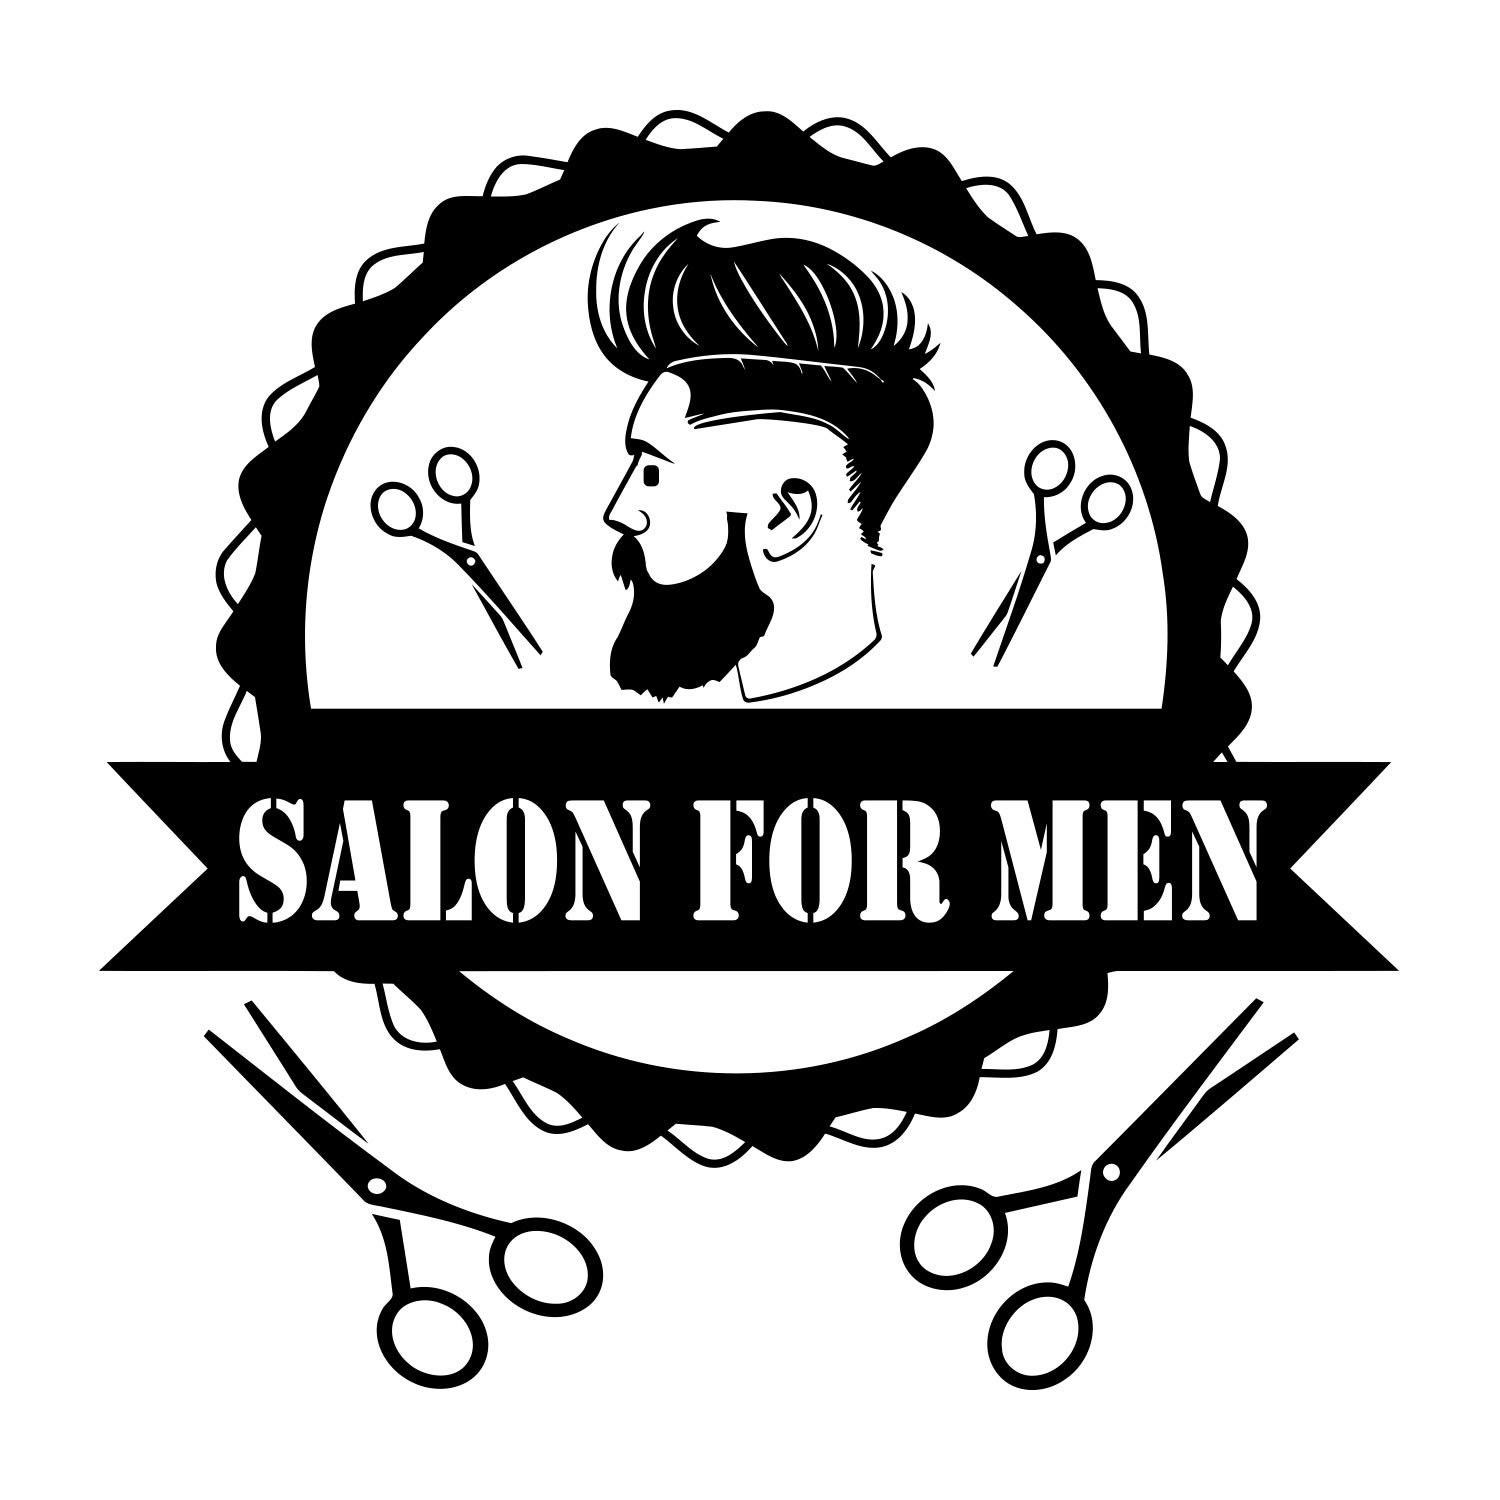 Barber am. Логотип мужской парикмахерской. Мужской салон красоты лого. Эмблемы парикмахерских. Логотипы мужских парикмахерских.